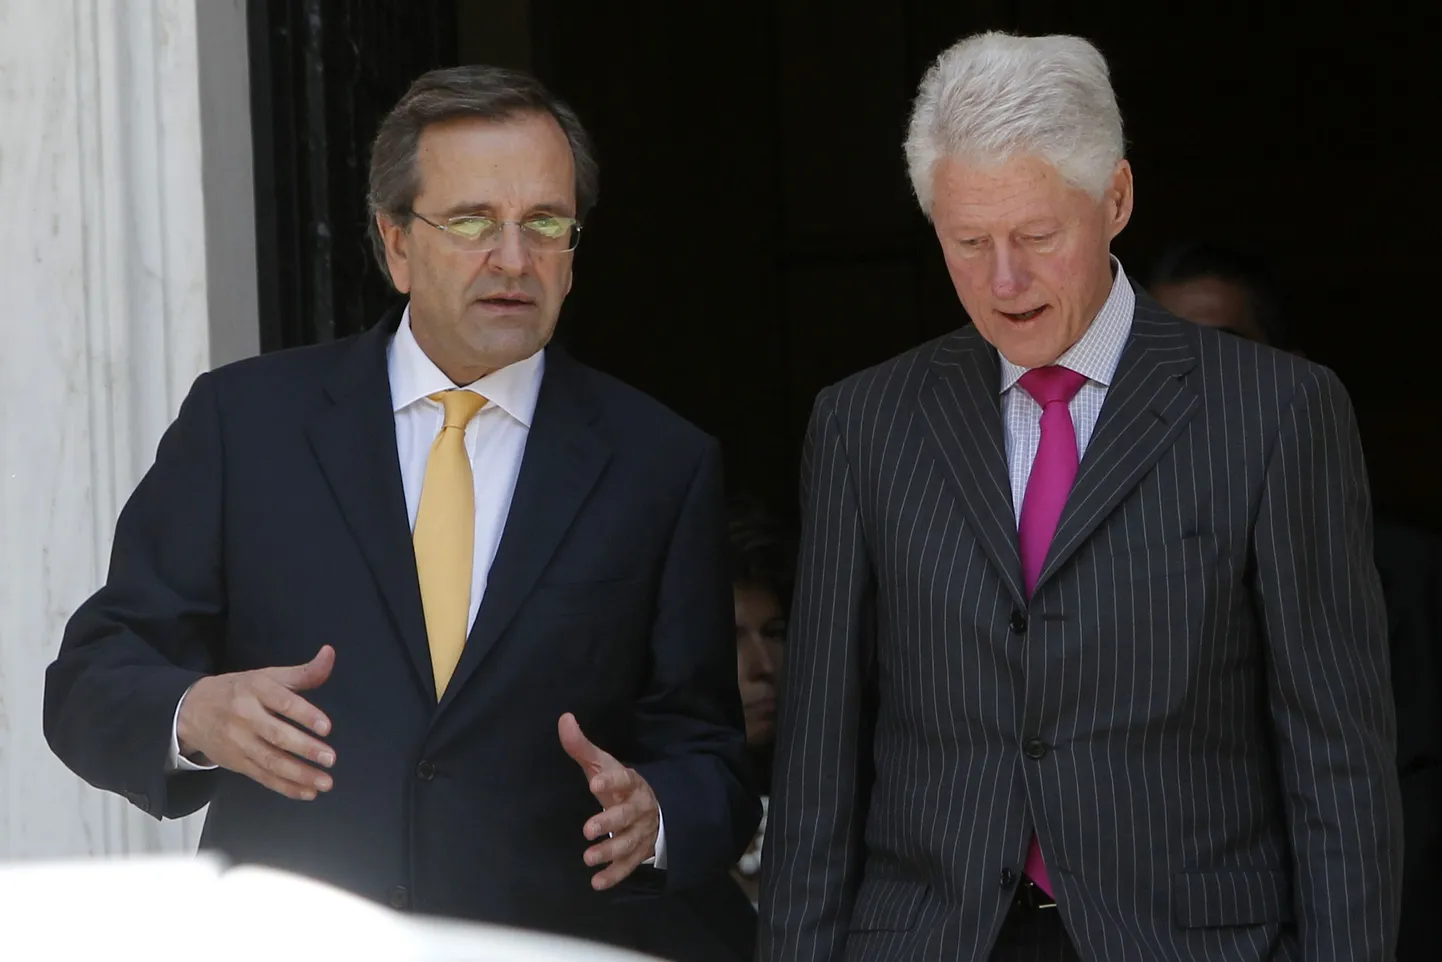 Kreeka peaminister Antonis Samaras koos Bill Clintoniga.